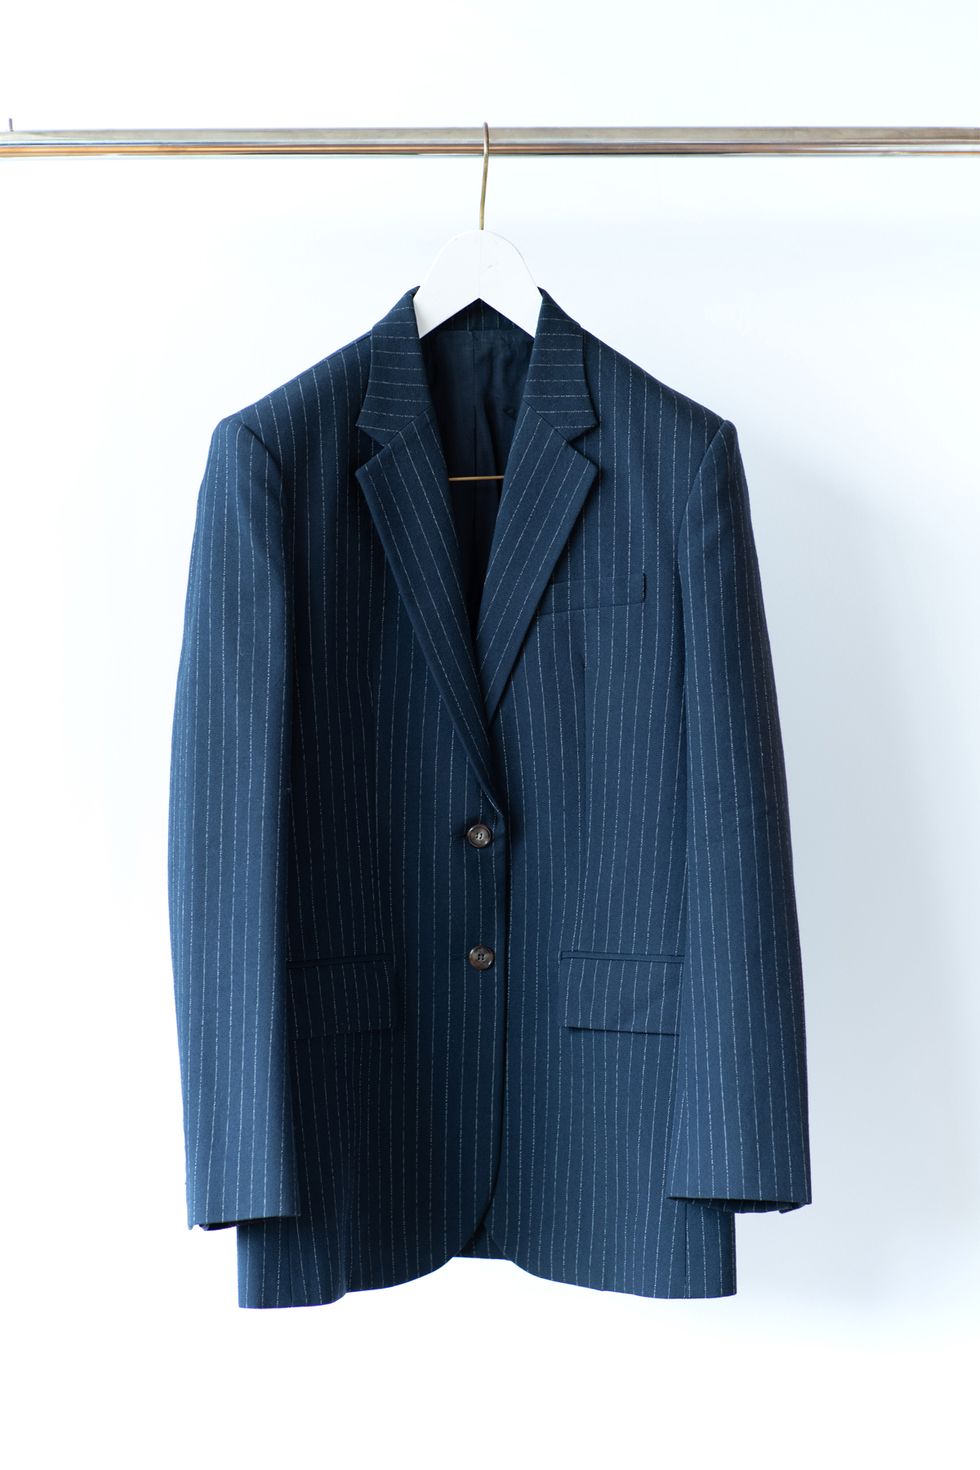 Clothing, Suit, Outerwear, Blue, Blazer, Jacket, Formal wear, Sleeve, Tuxedo, Top, 